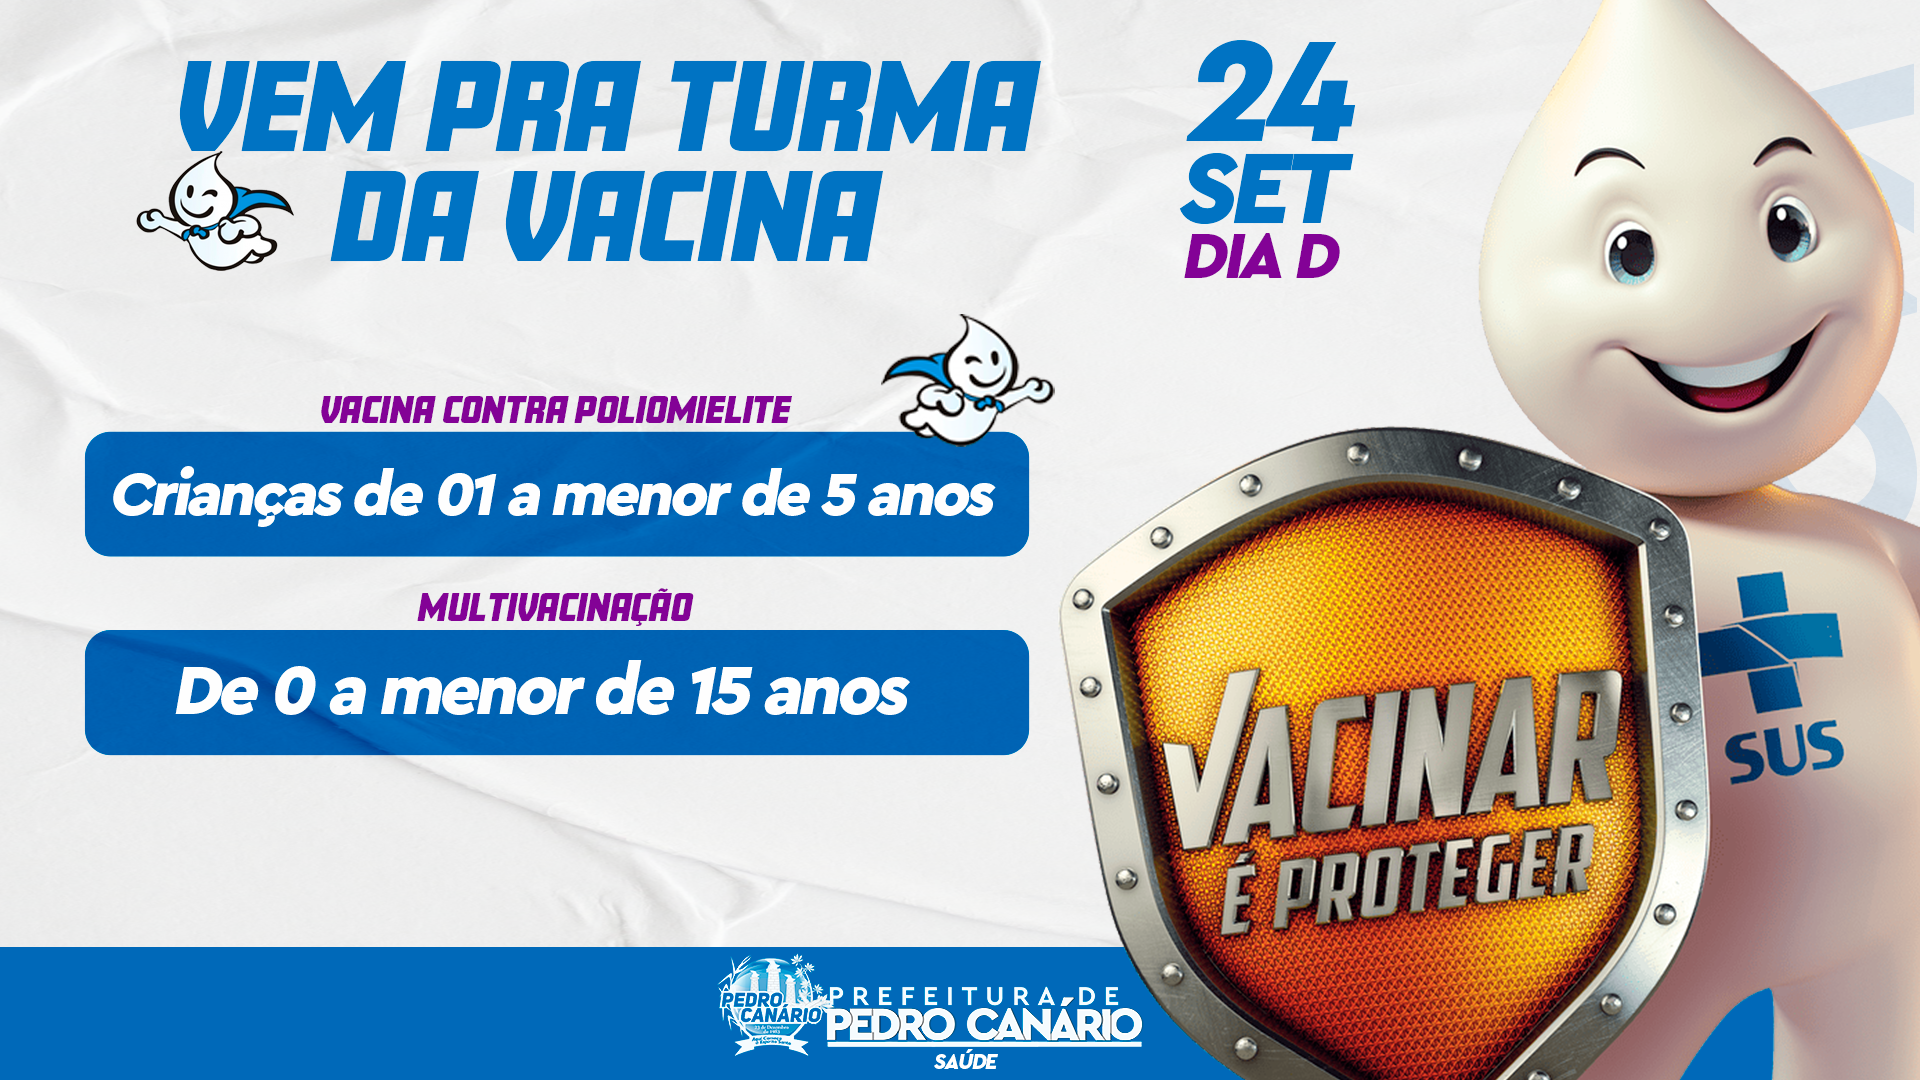 Dia D da campanha de vacinação acontece neste sábado (24/09) em Pedro Canário